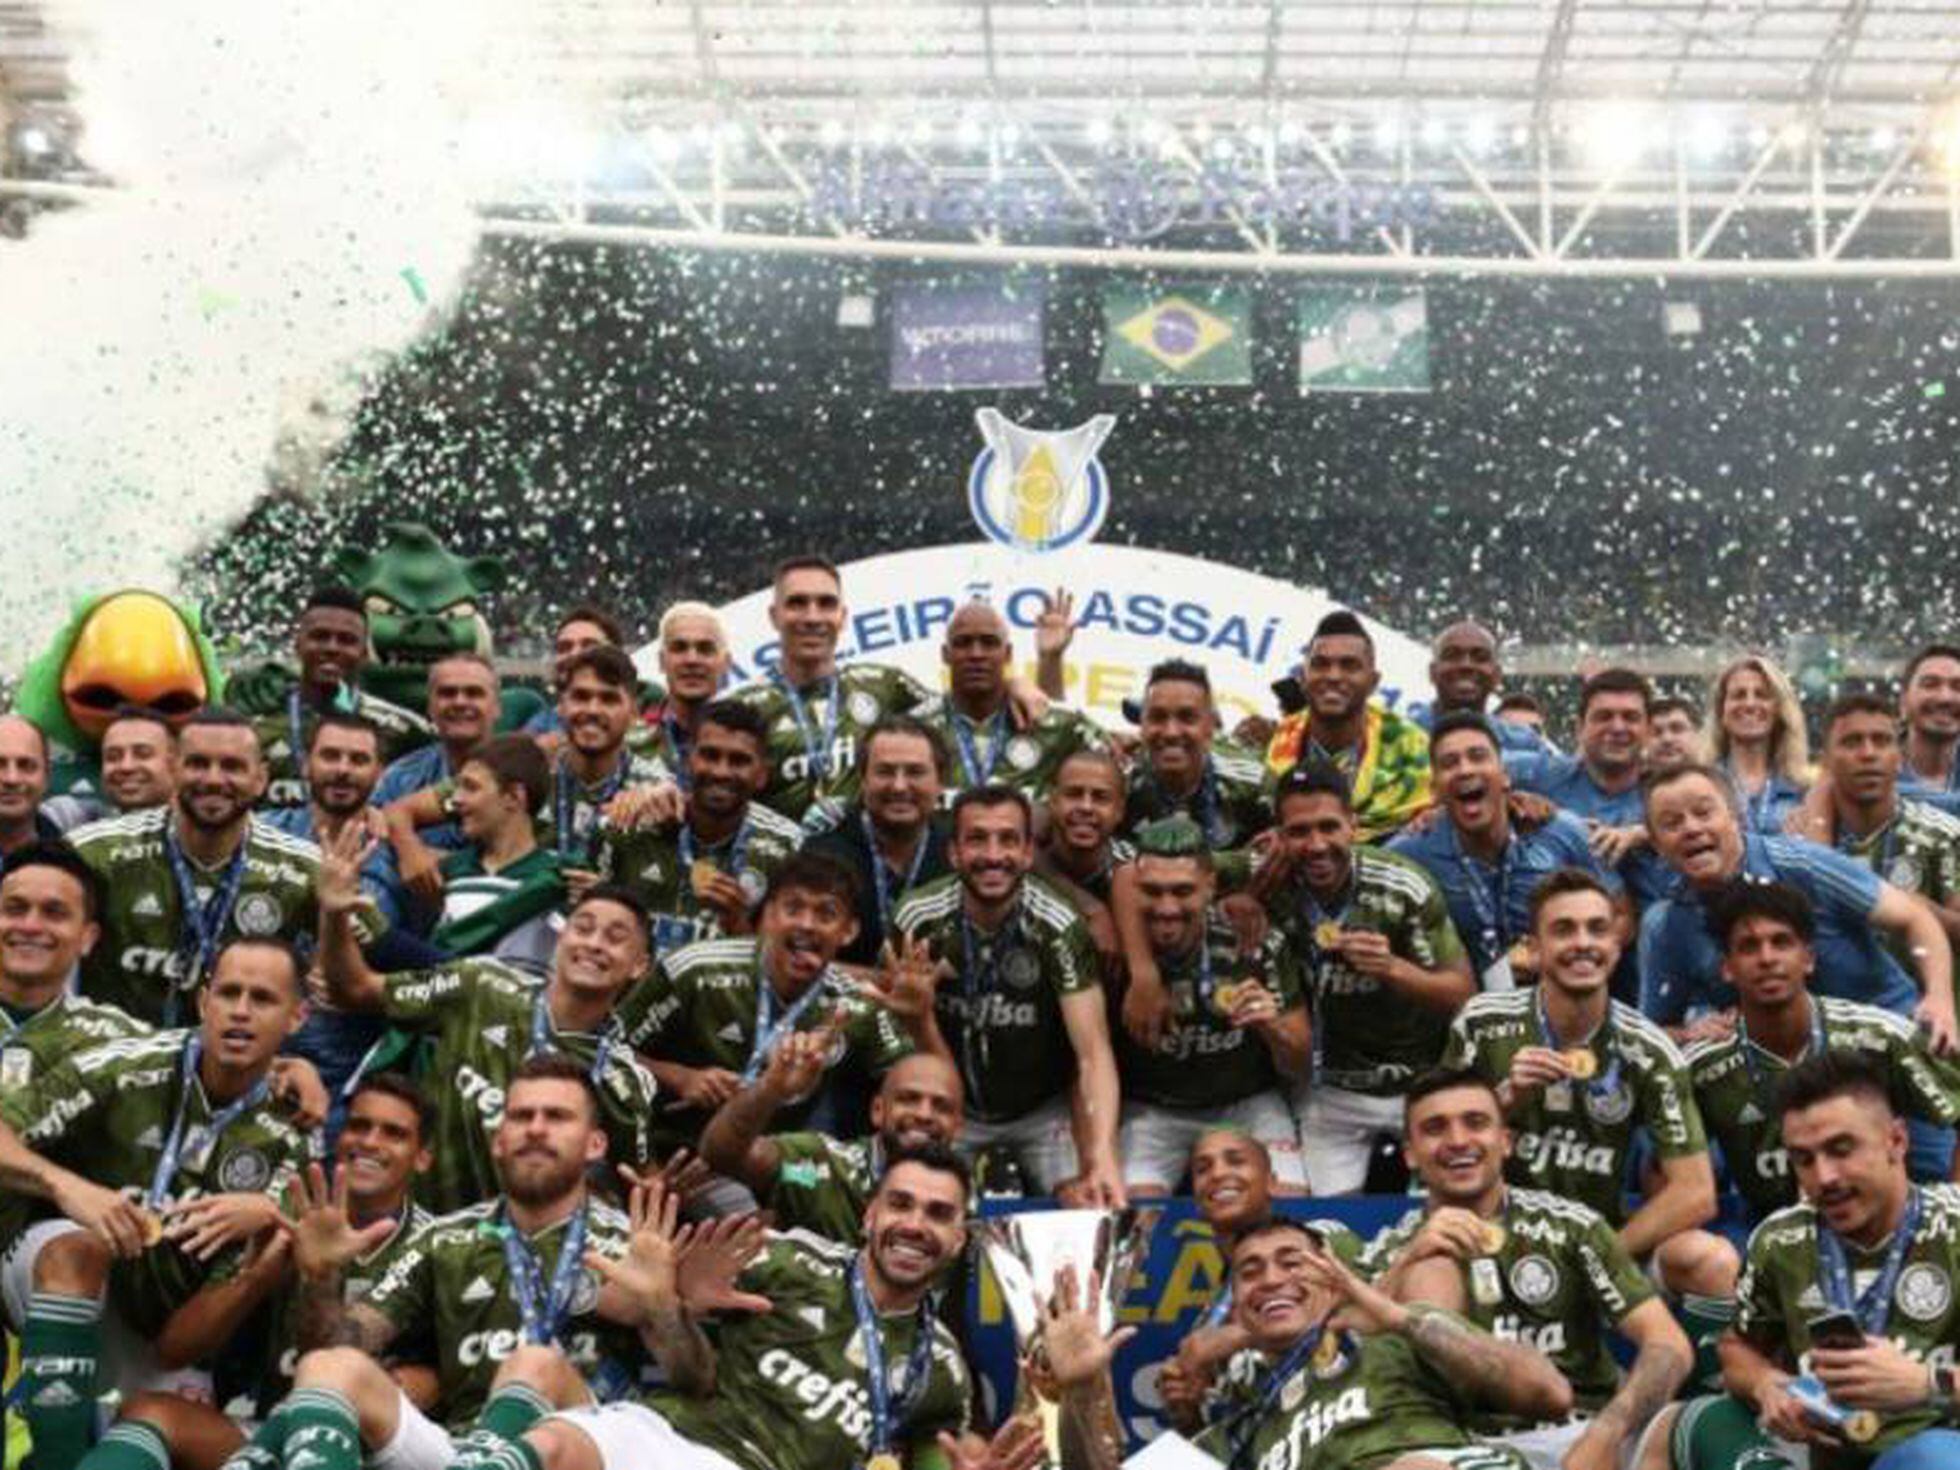 Campeonato Paulista, Campeonato Paulista: premiação do estadual mais rico  do país que conta com cinco times da Série A do Brasileirão